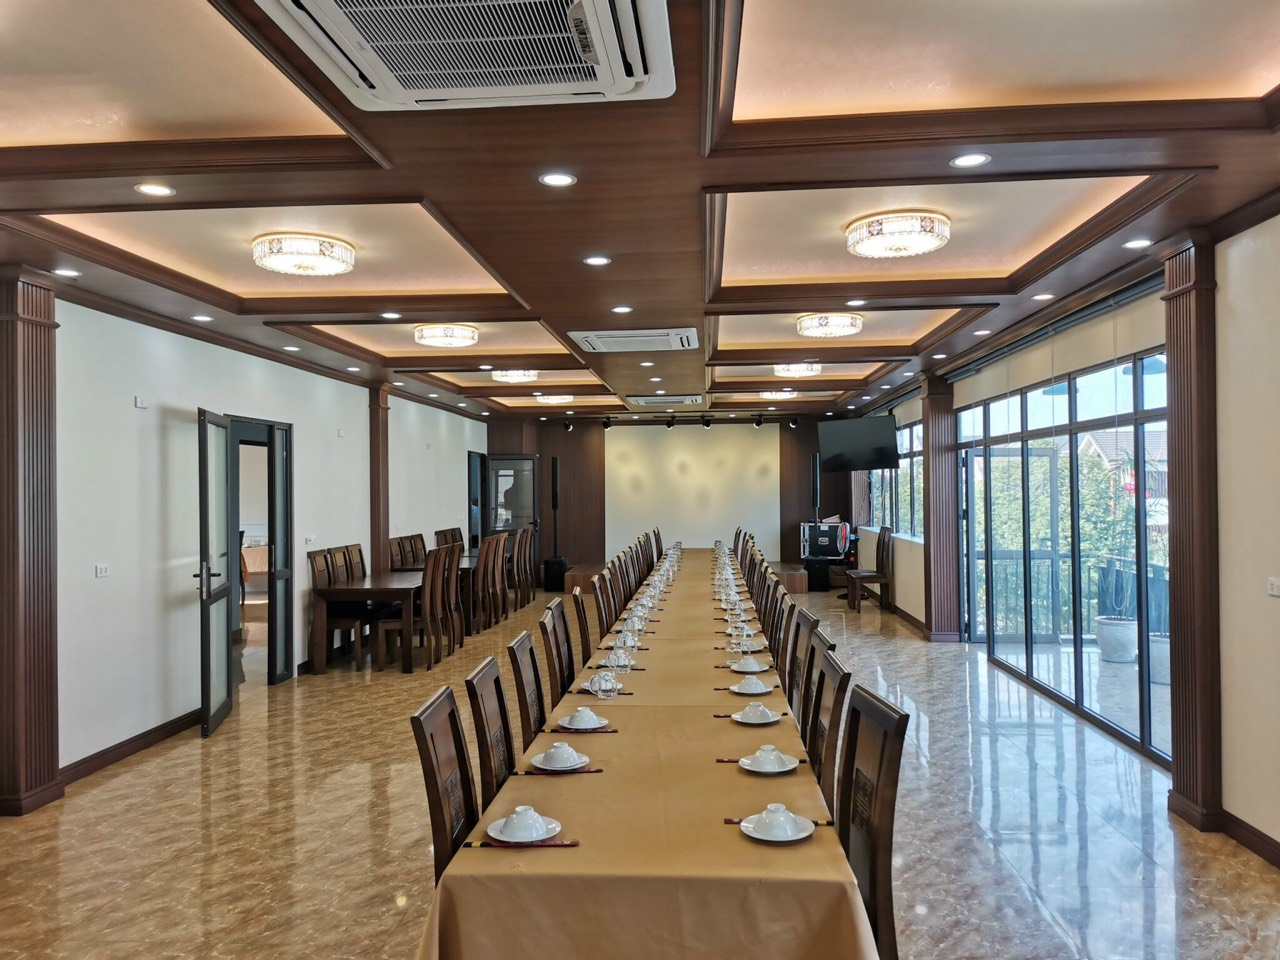 Tam op AnPro 3 - Thiết kế nội thất nhà hàng hiện đại với vân gỗ đẹp mắt